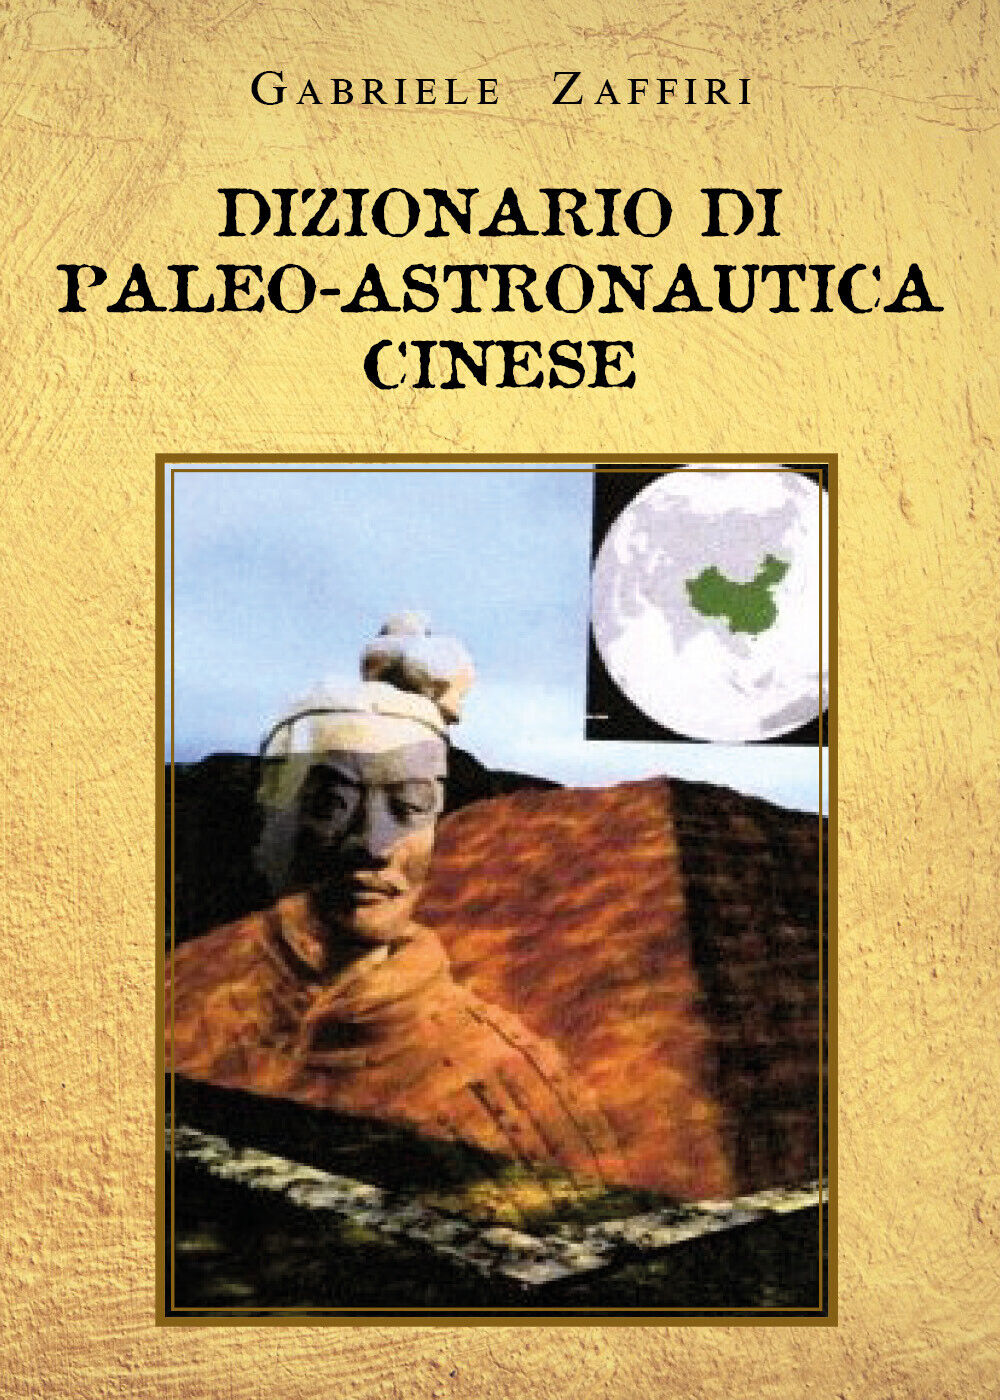 Dizionario di paleo-astronautica cinese di Gabriele Zaffiri,  2021,  Youcanprint